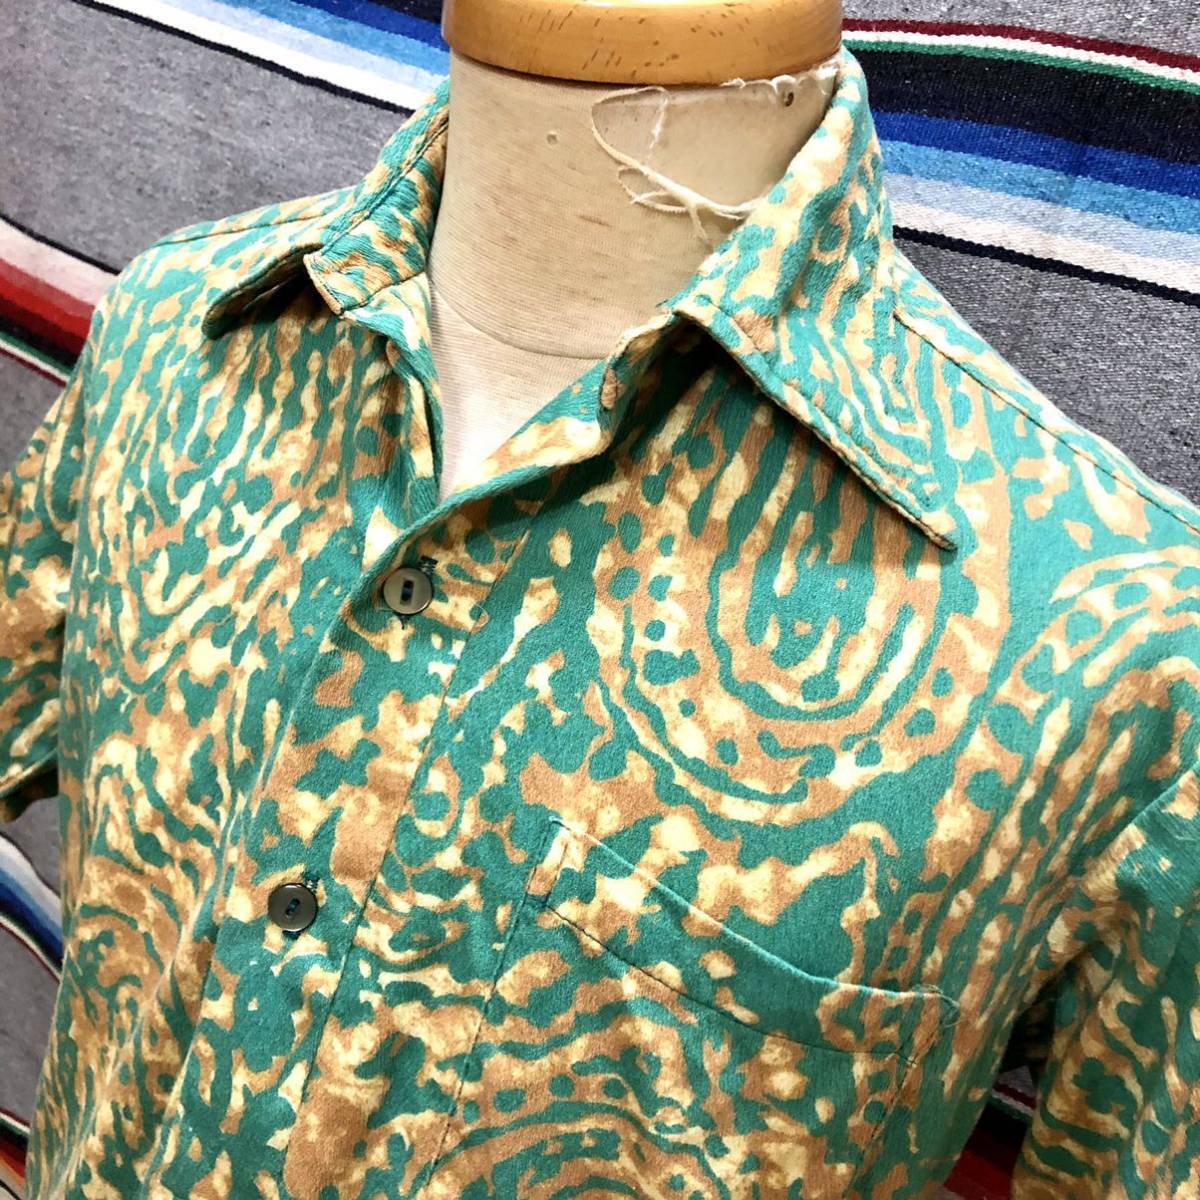 70’s Aliikoa プルオーバー Hawaiian Shirt 検索:古着 ビンテージ HAWAII アロハシャツ ハワイ コットン 70年代_画像1